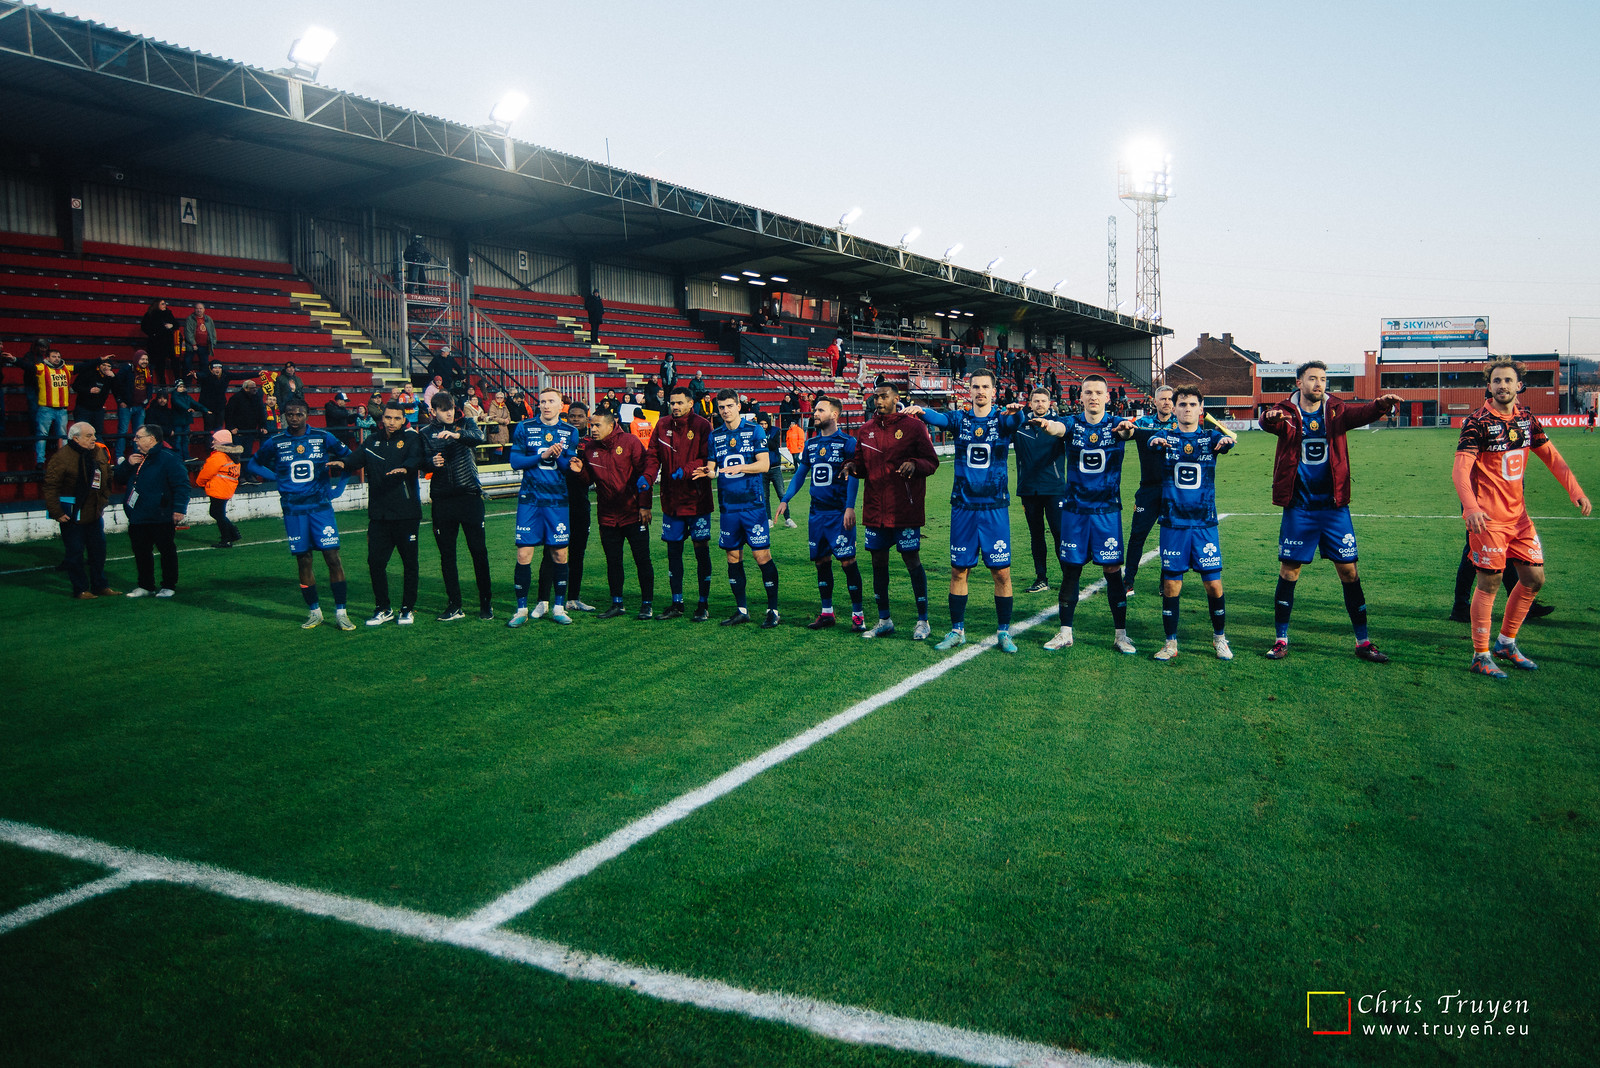 RFC Seraing - KV Mechelen